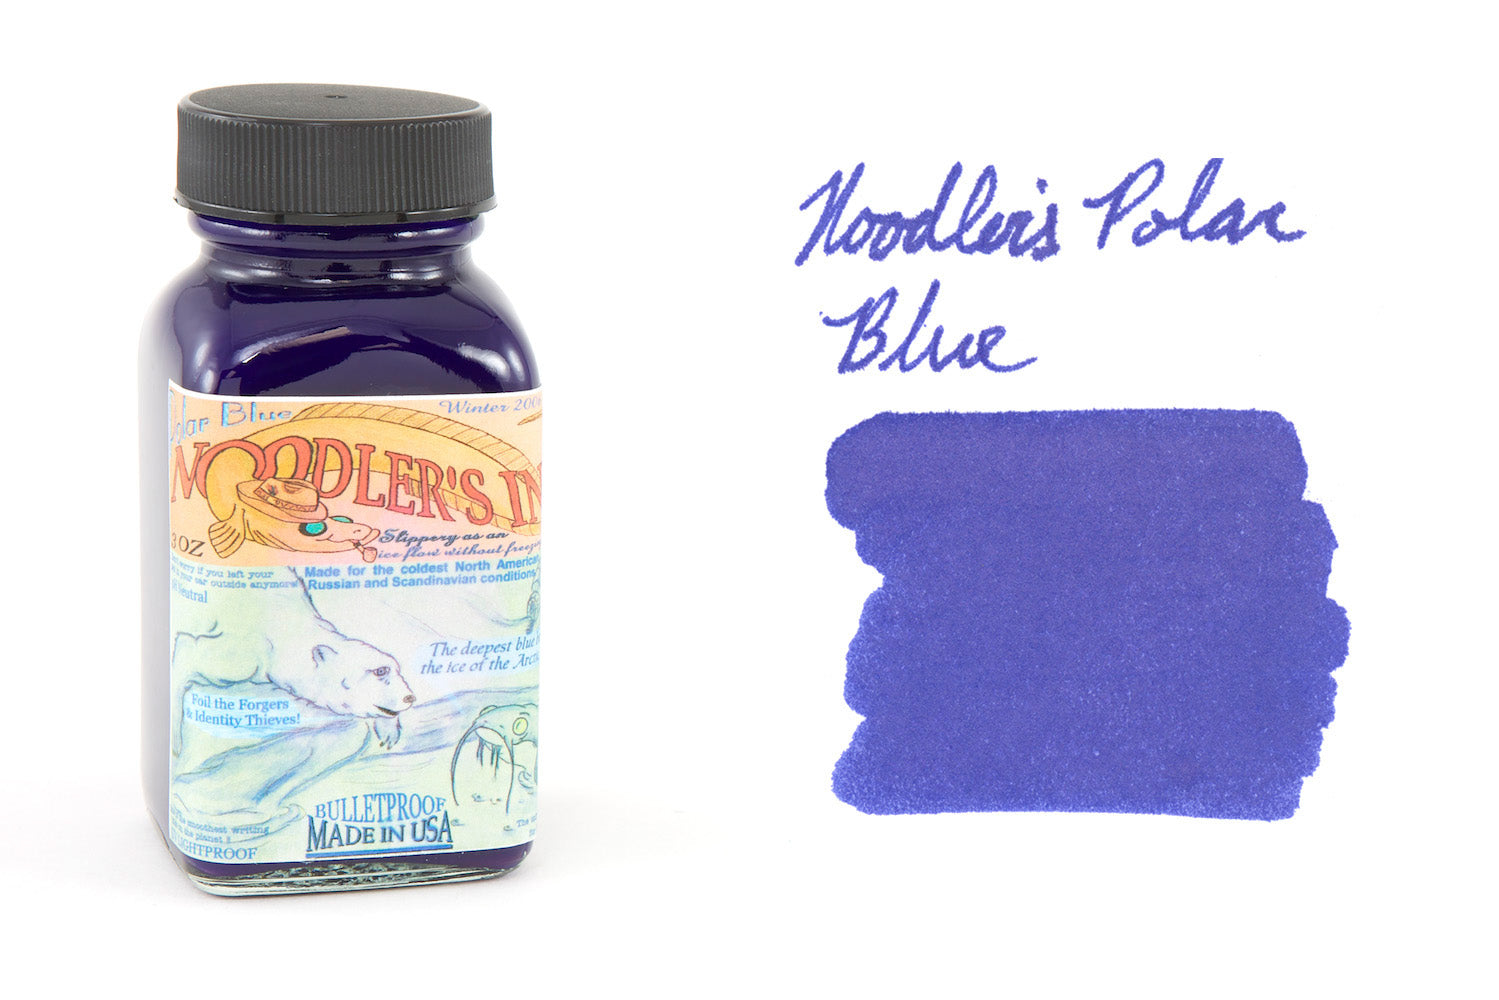 Noodler's Baystate Blue Ink (3 oz Bottle) – Lemur Ink